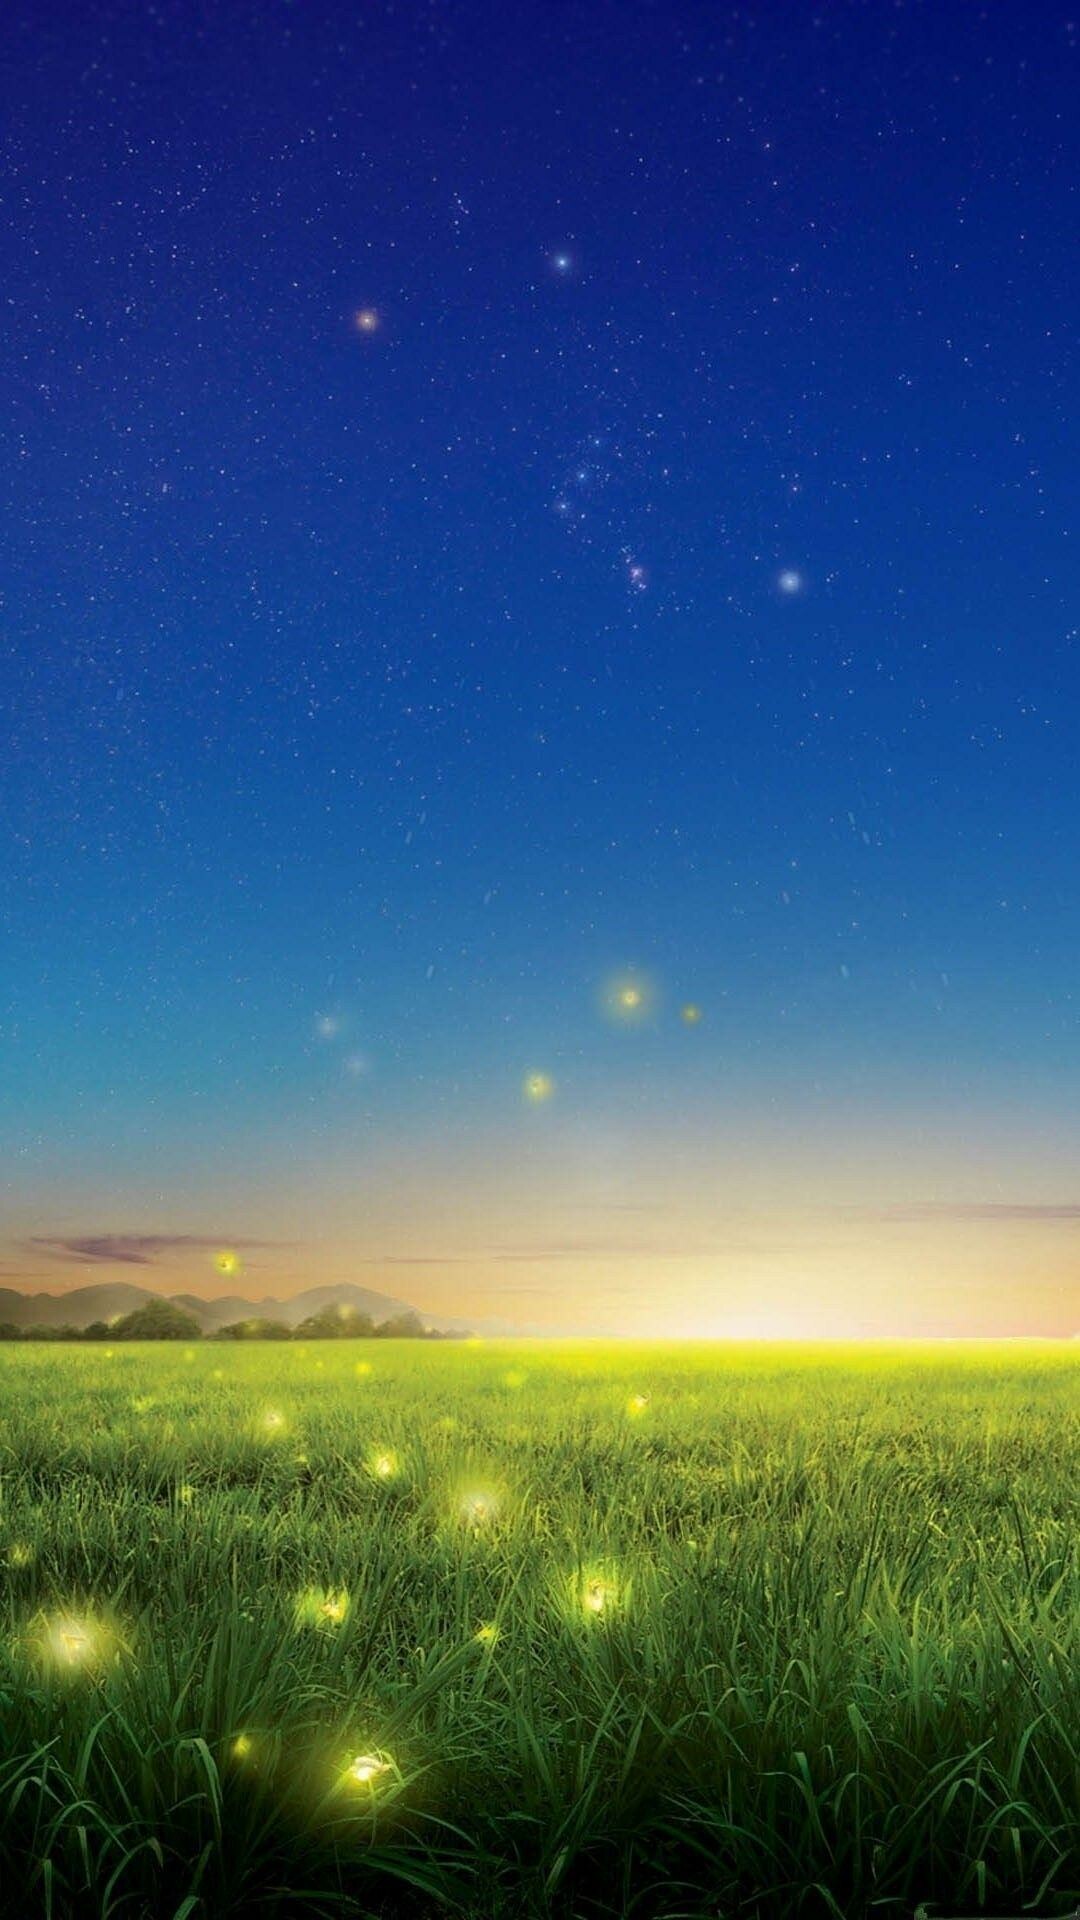 Fireflies 1080P, 2K, 4K, 5K HD wallpapers free download | Wallpaper Flare